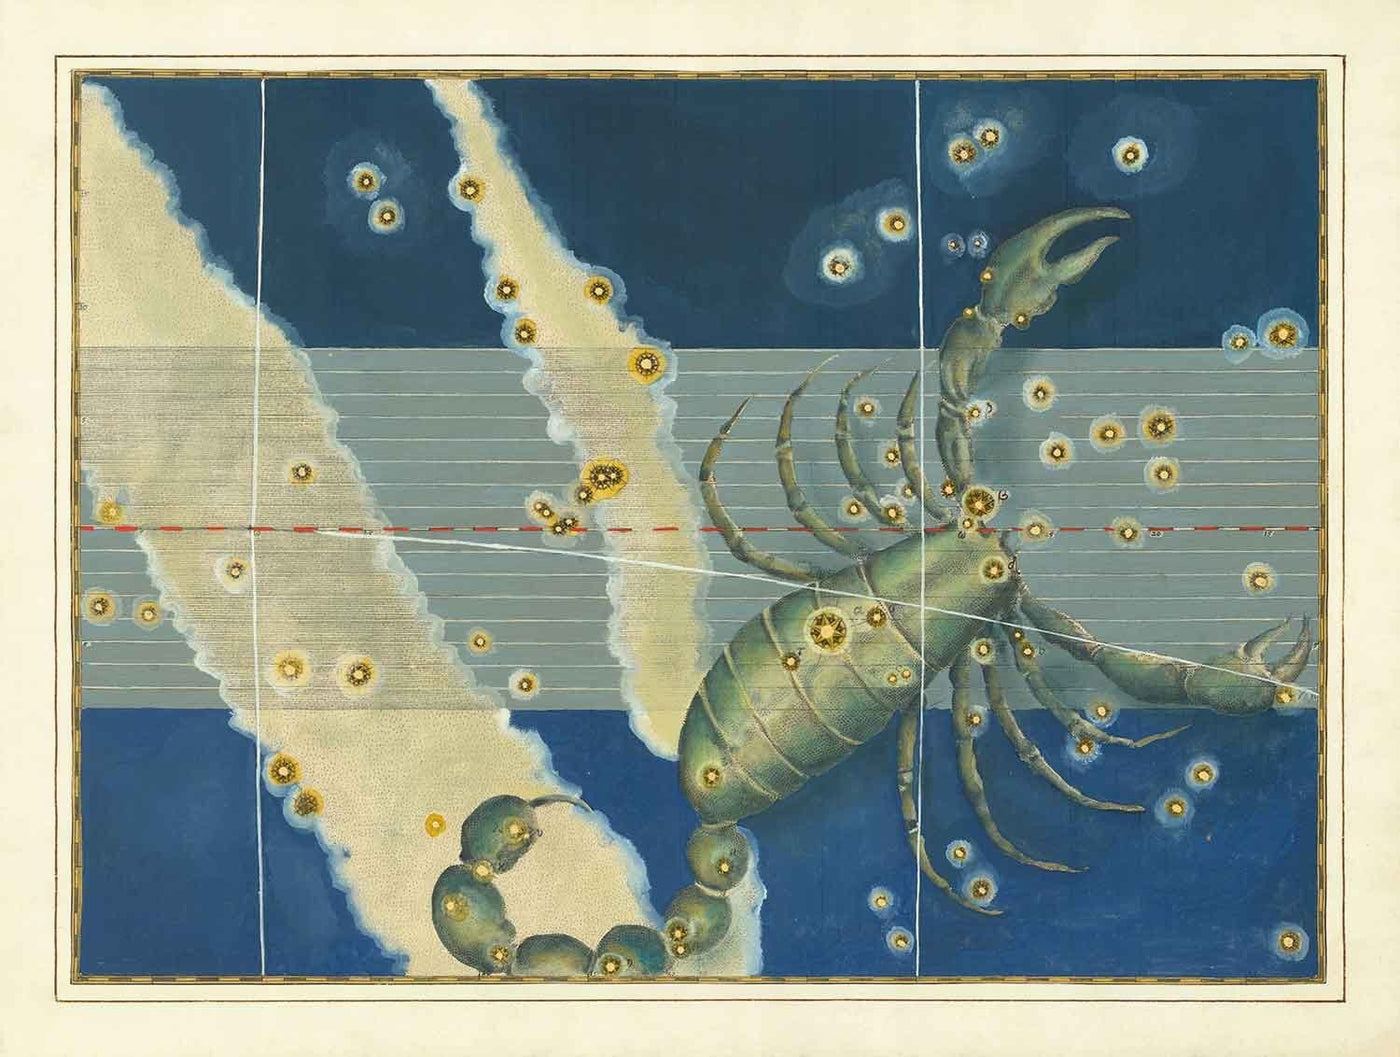 Old Star Map of Scorpio, 1603 von Johann Bayer - Zodiac Astrology Diagramm - Das Skorpion -Horoskop -Zeichen